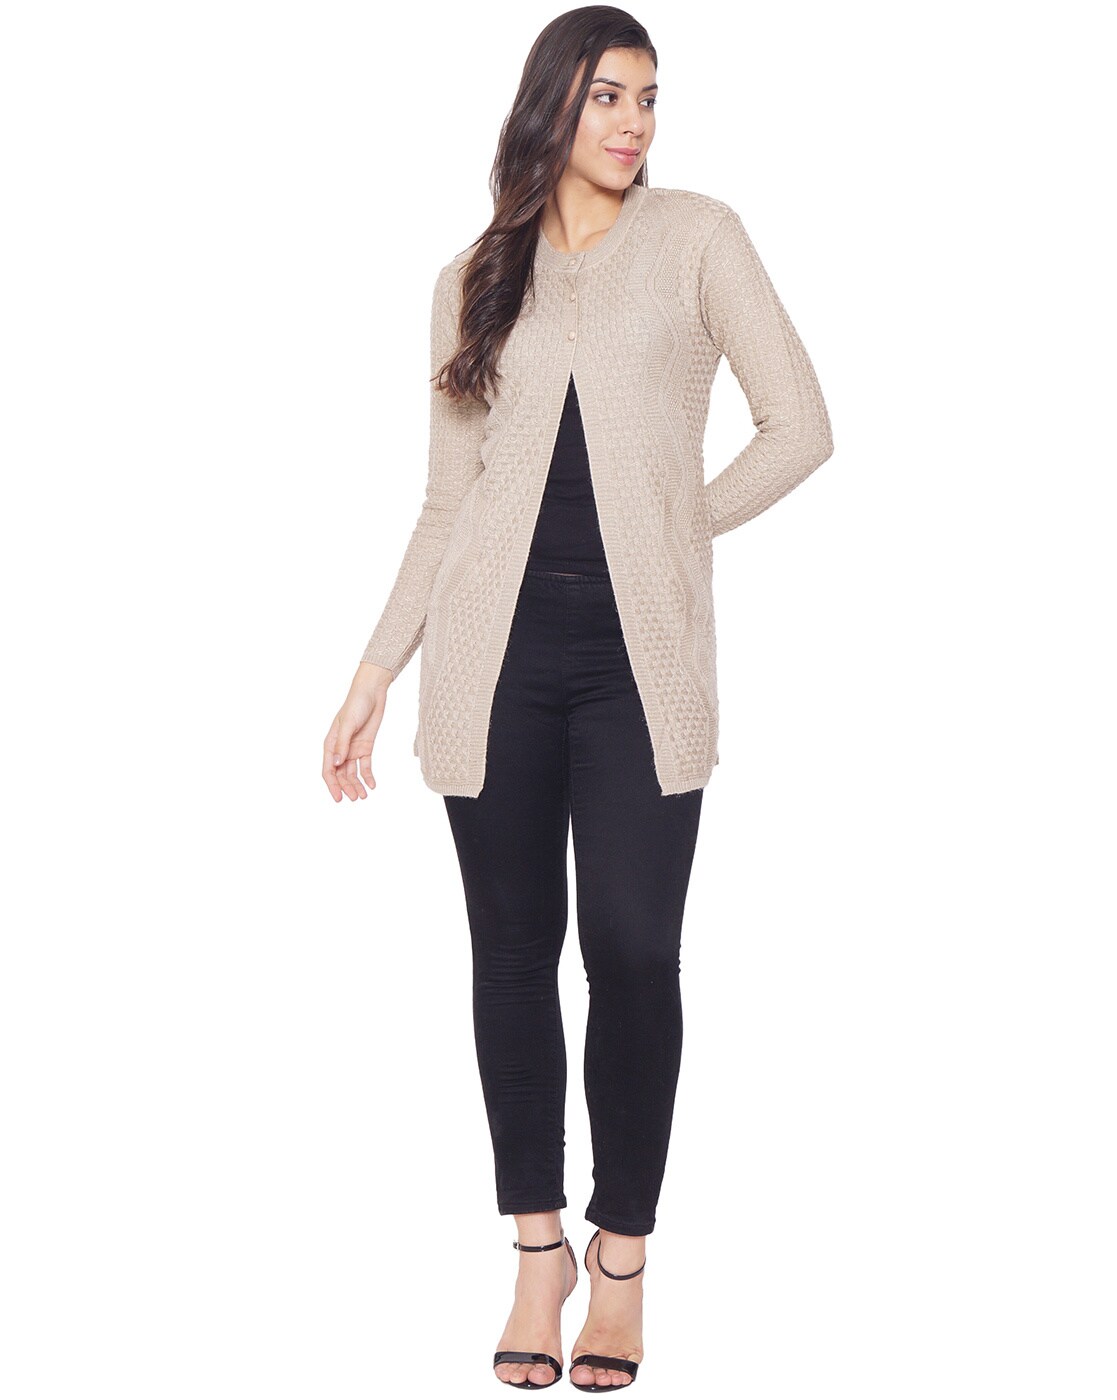 Hanes Women's Beige Long Sleeve Open Font Knitted Cardigan Sweater